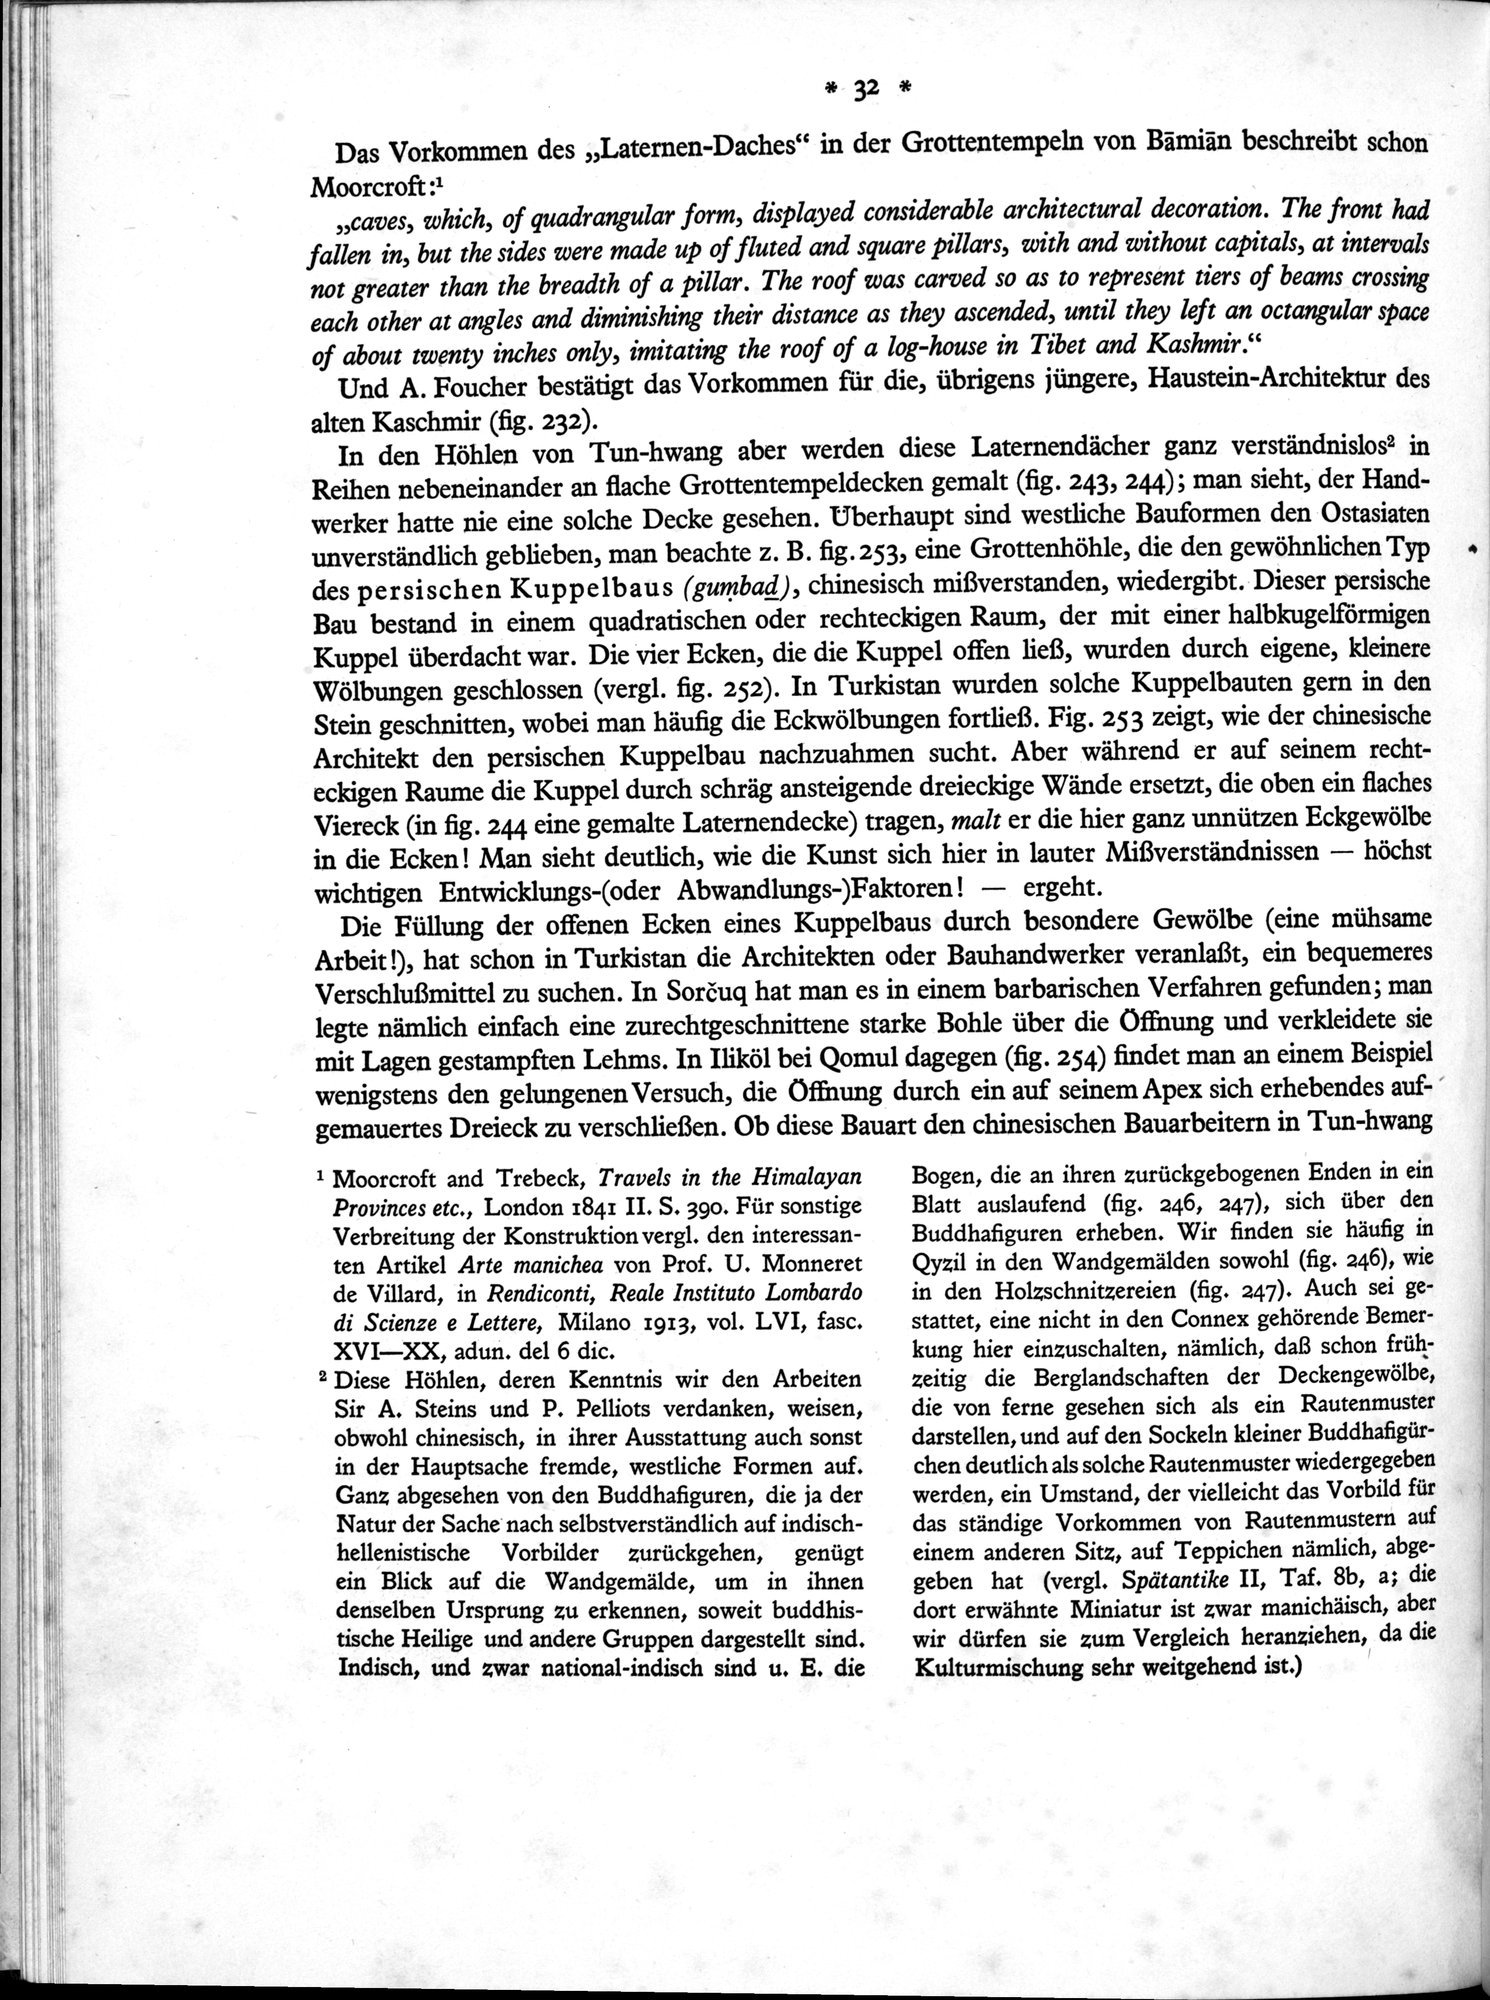 Bilderatlas zur Kunst und Kulturgeschichte Mittel-Asiens : vol.1 / Page 36 (Grayscale High Resolution Image)